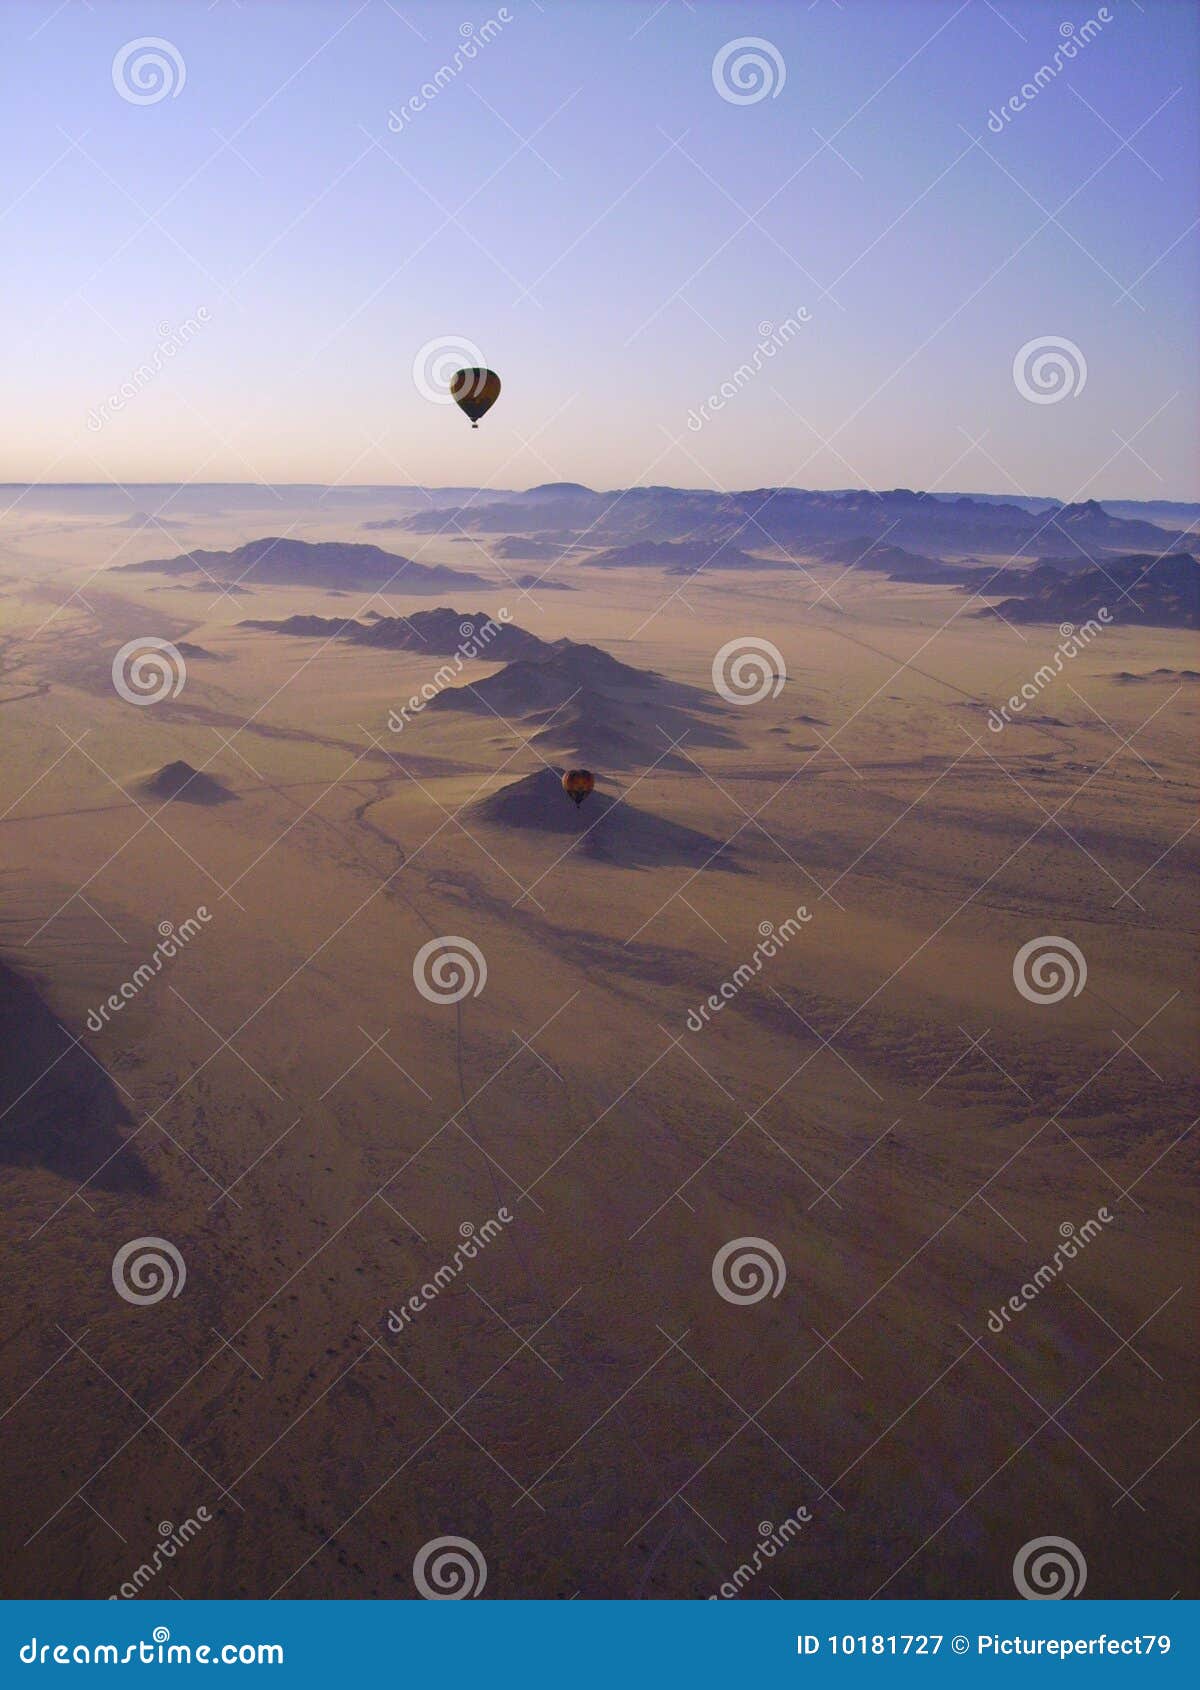 hot air ballooning - namibia